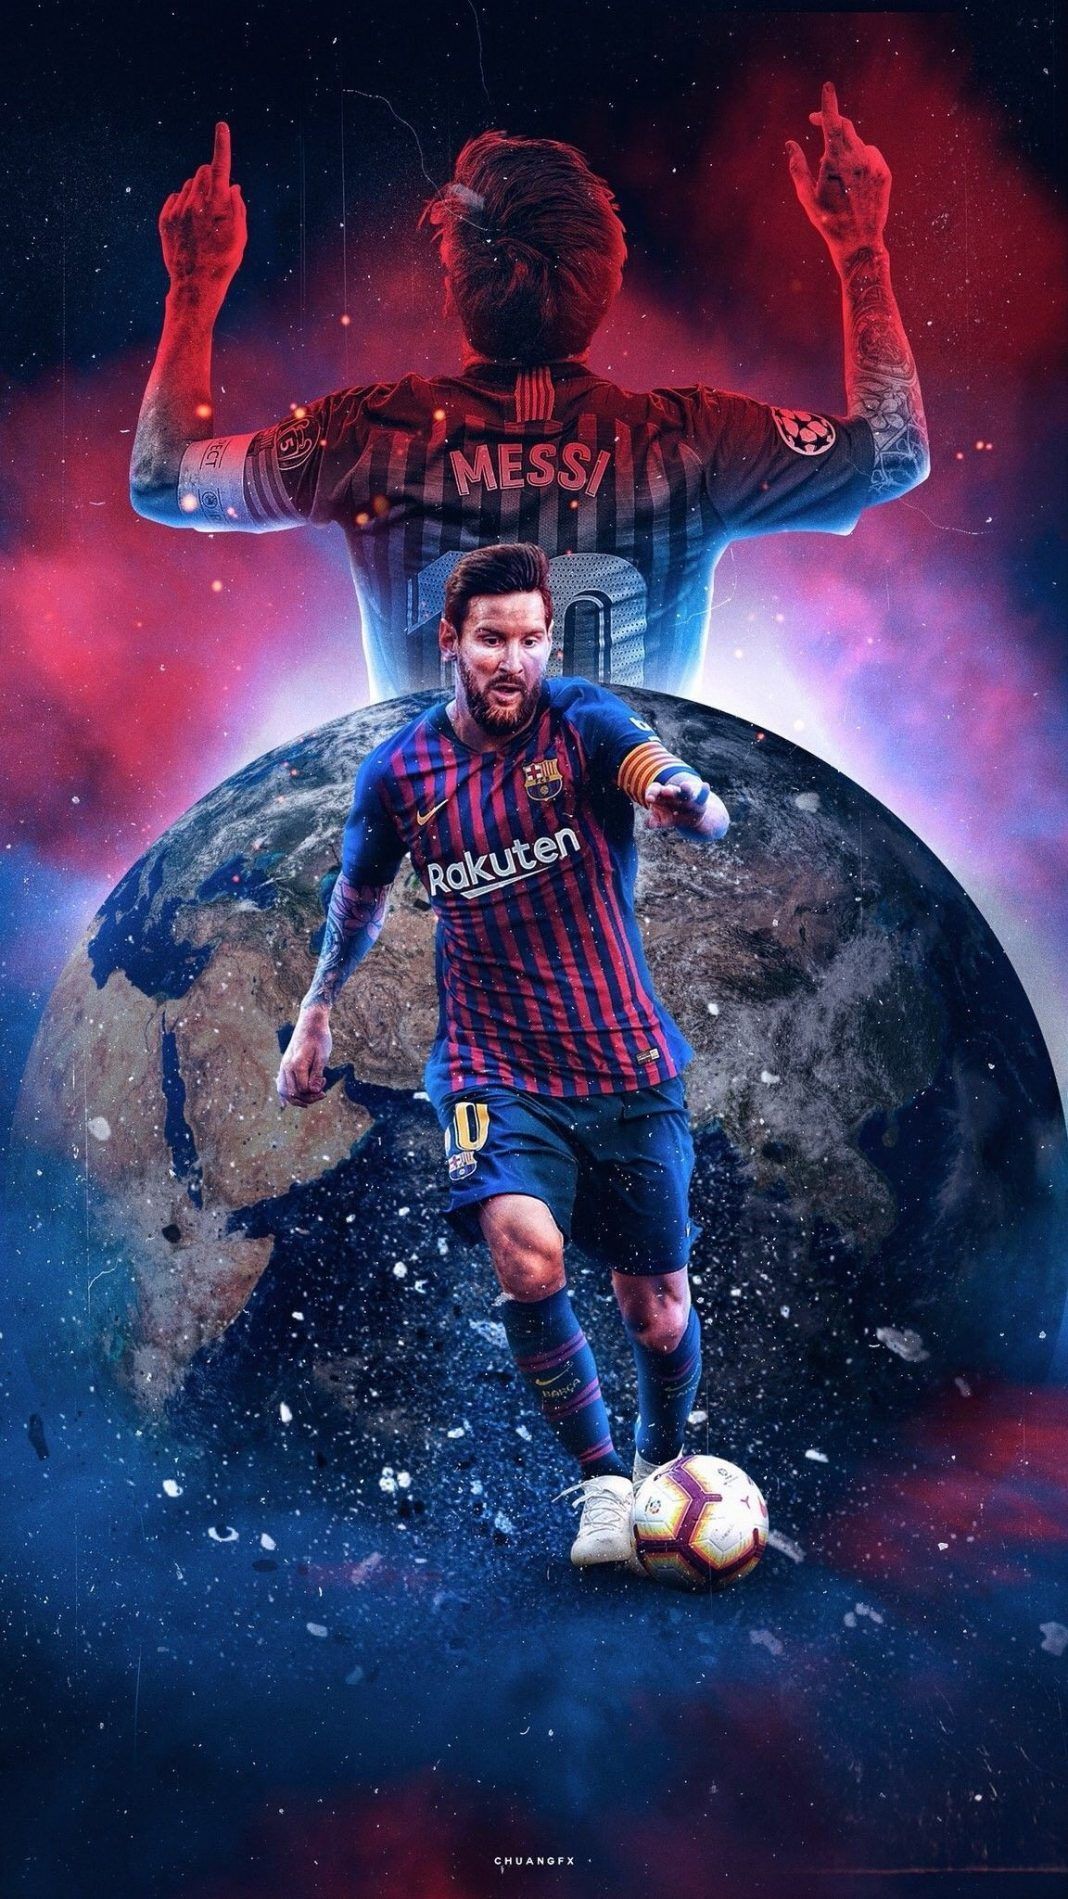 lionel messi wallpaper. Lionel messi wallpaper, Messi vs ronaldo, Lionel messi barcelona